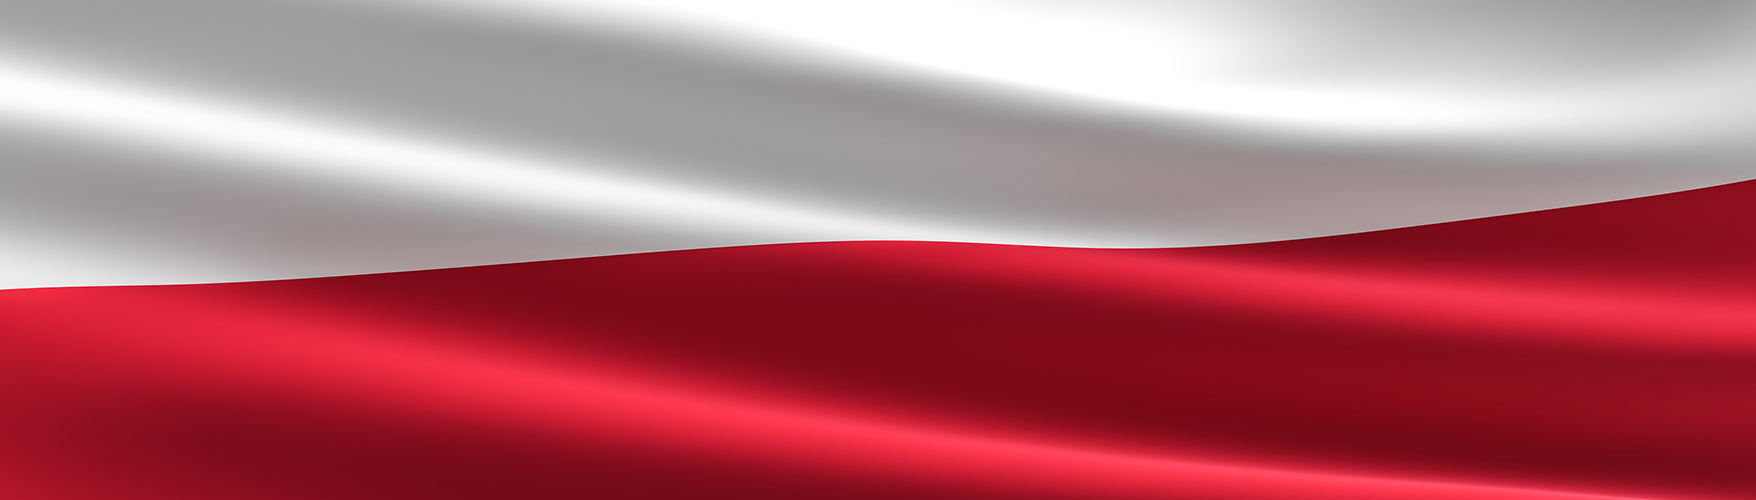 EHEDG Poland